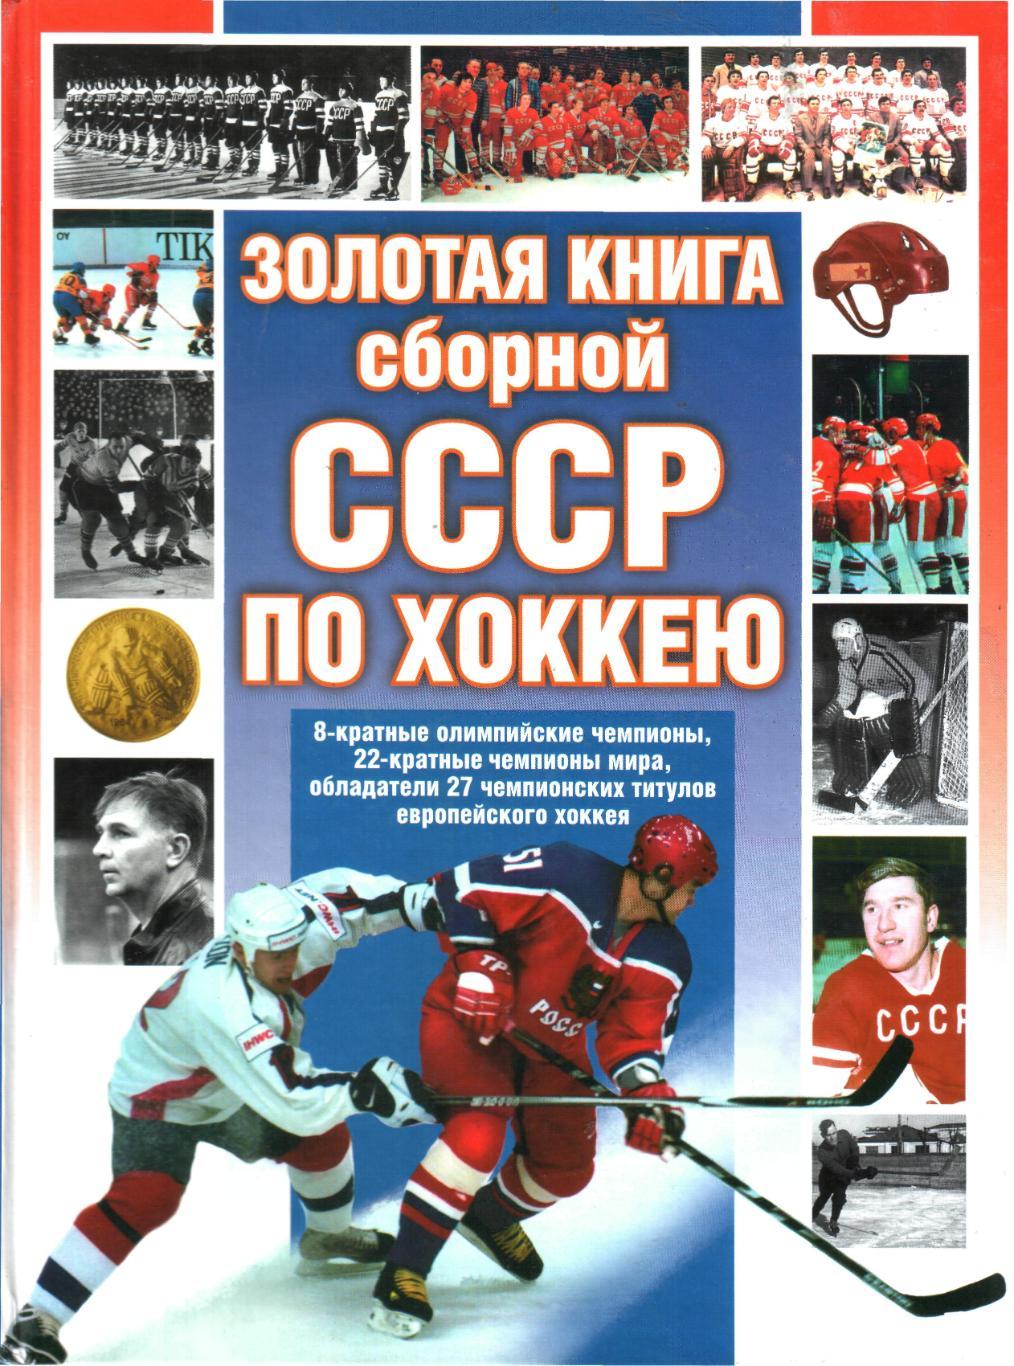 Вайханский, Семен: Золотая книга сборной СССР по хоккею